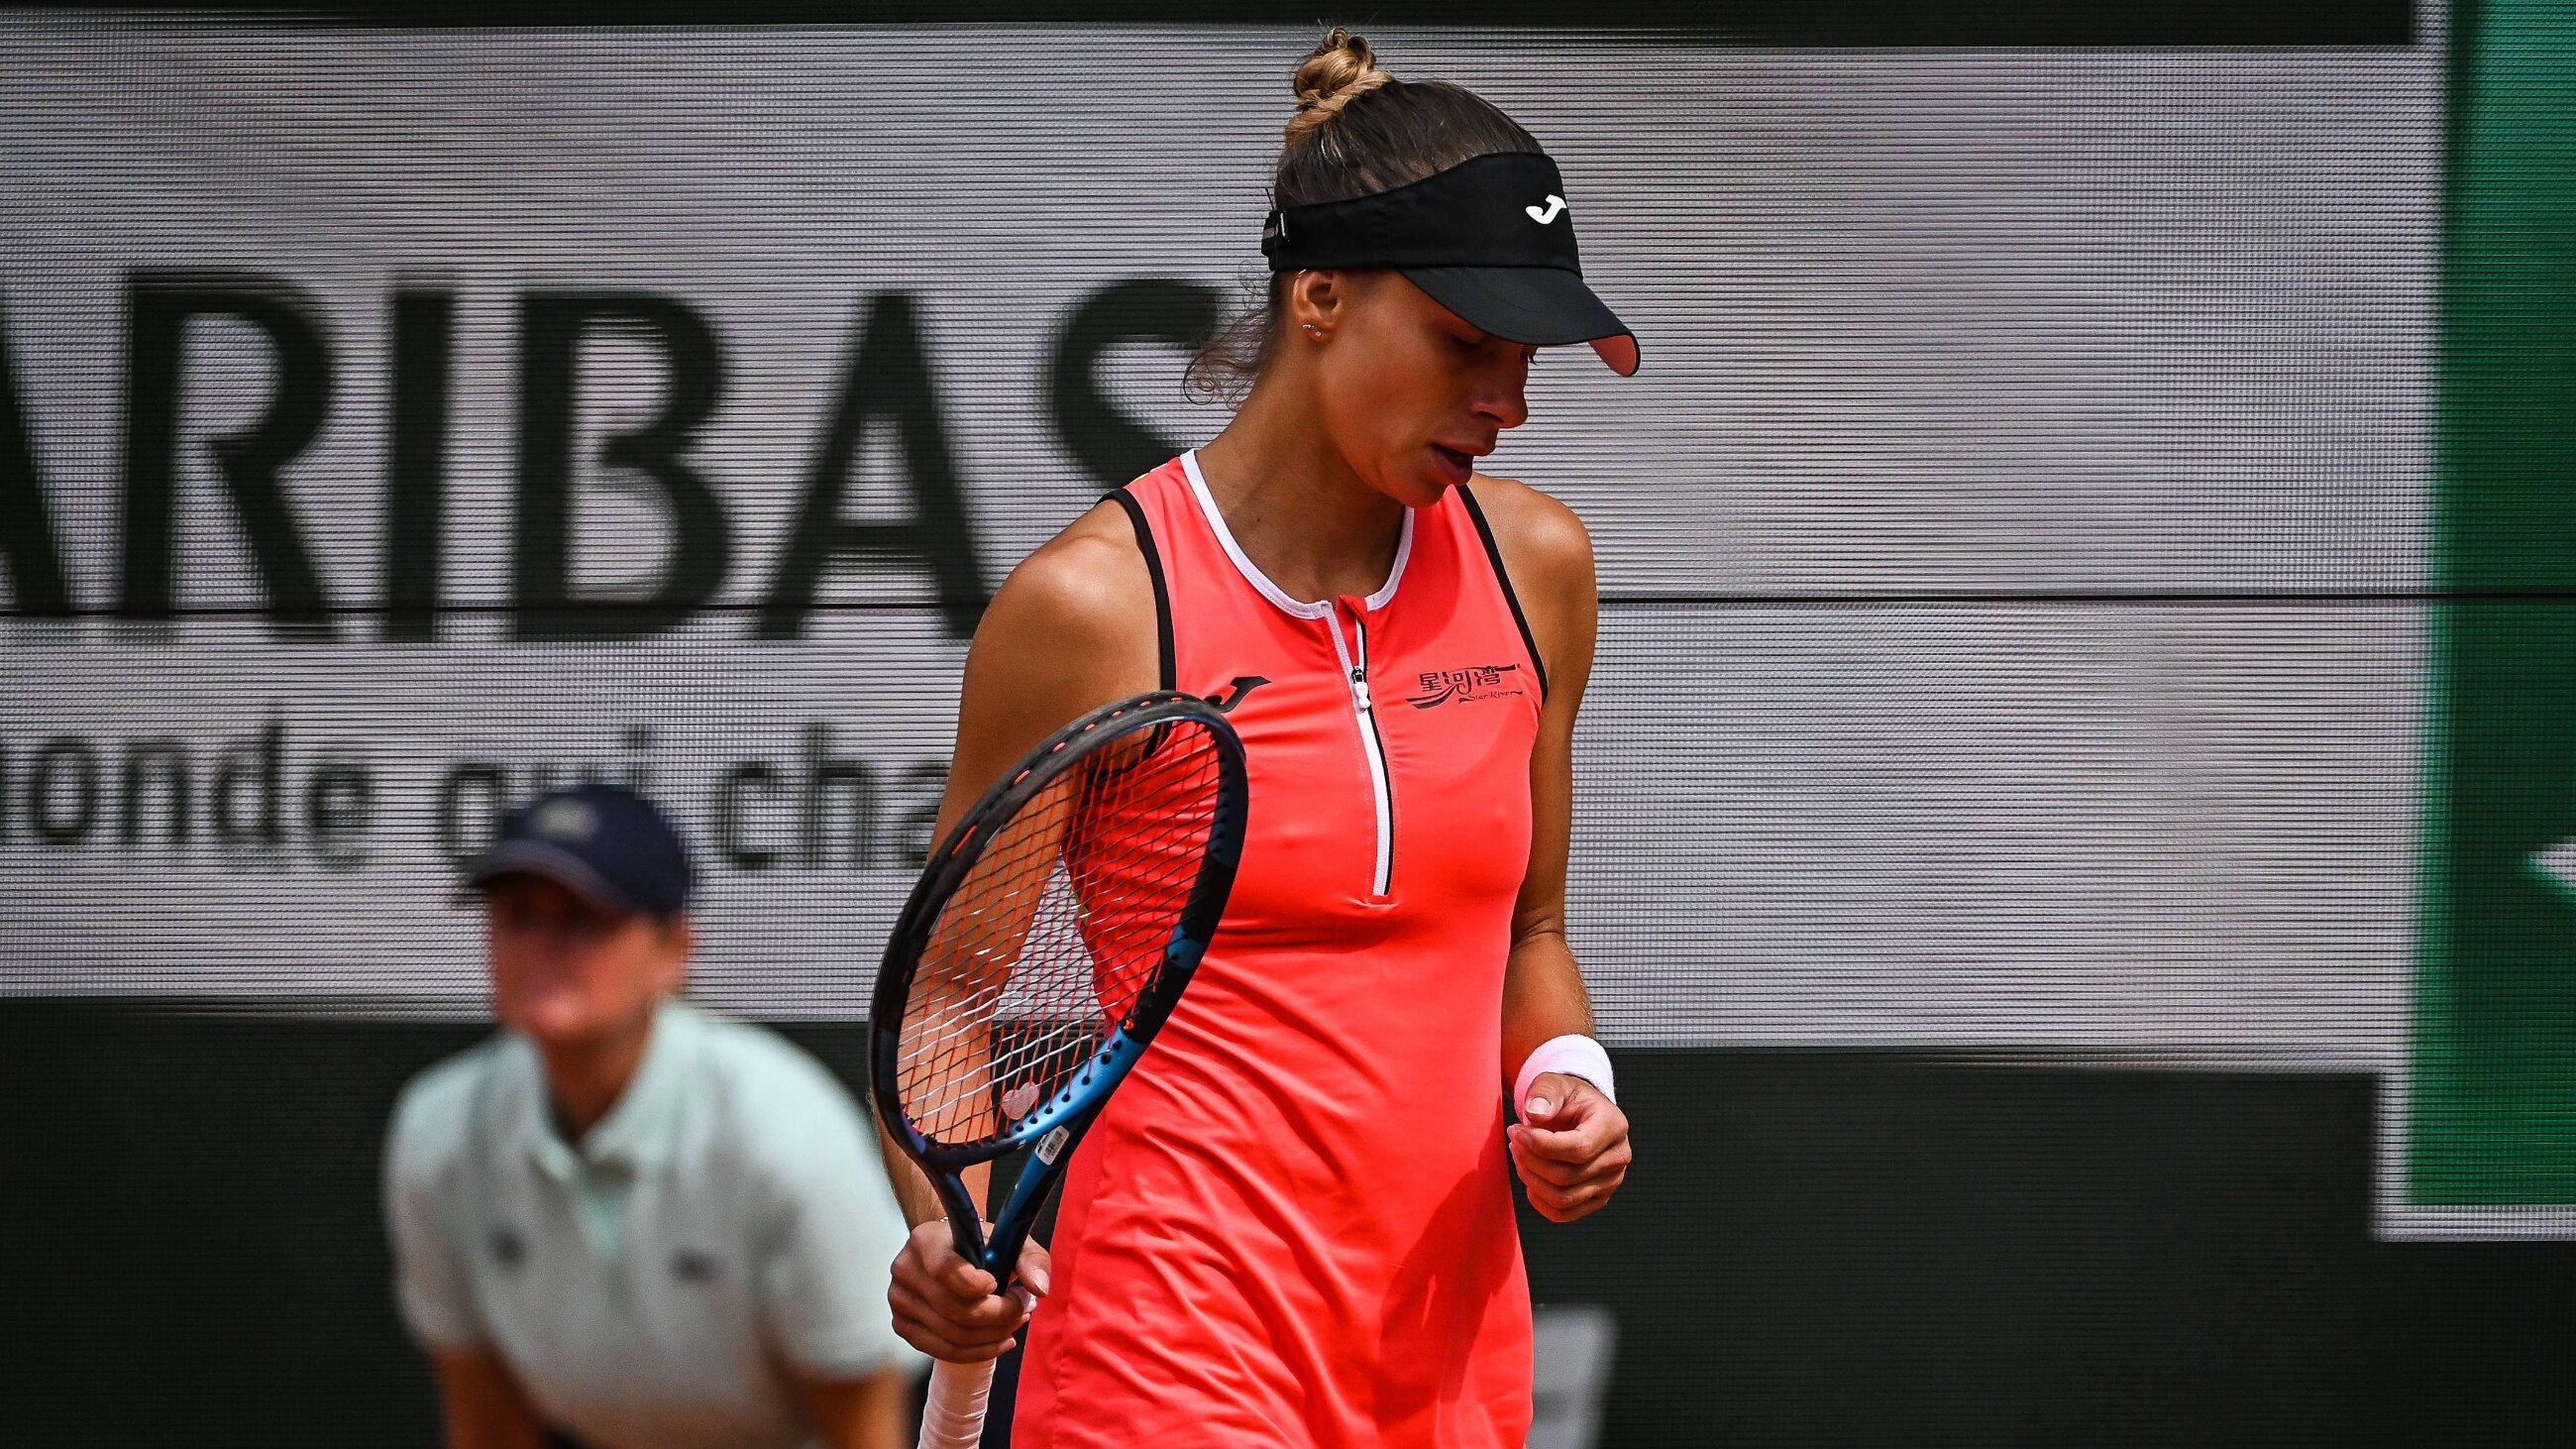 Magda Linette odpadła z French Open 2022. Polka przegrała z niżej notowaną rywalką – Tenis – Sport Wprost